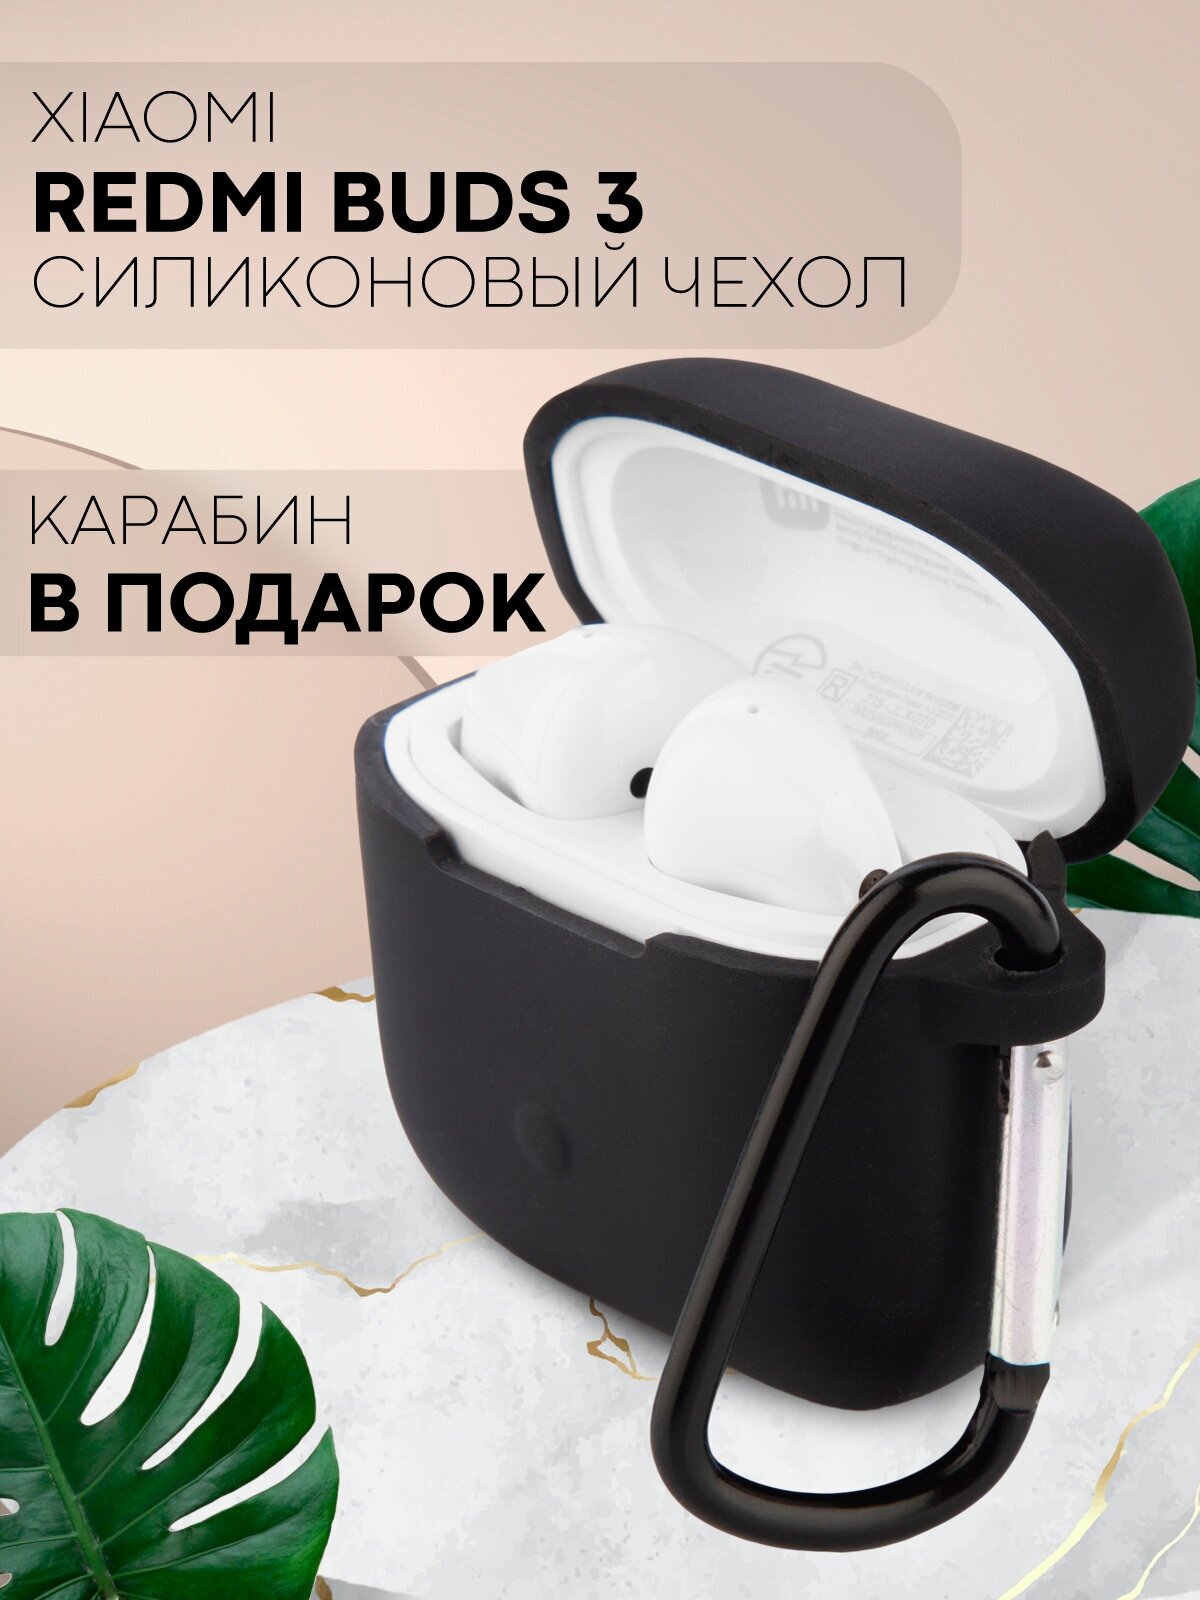 Чехол для беспроводных наушников Xiaomi Redmi Buds 3